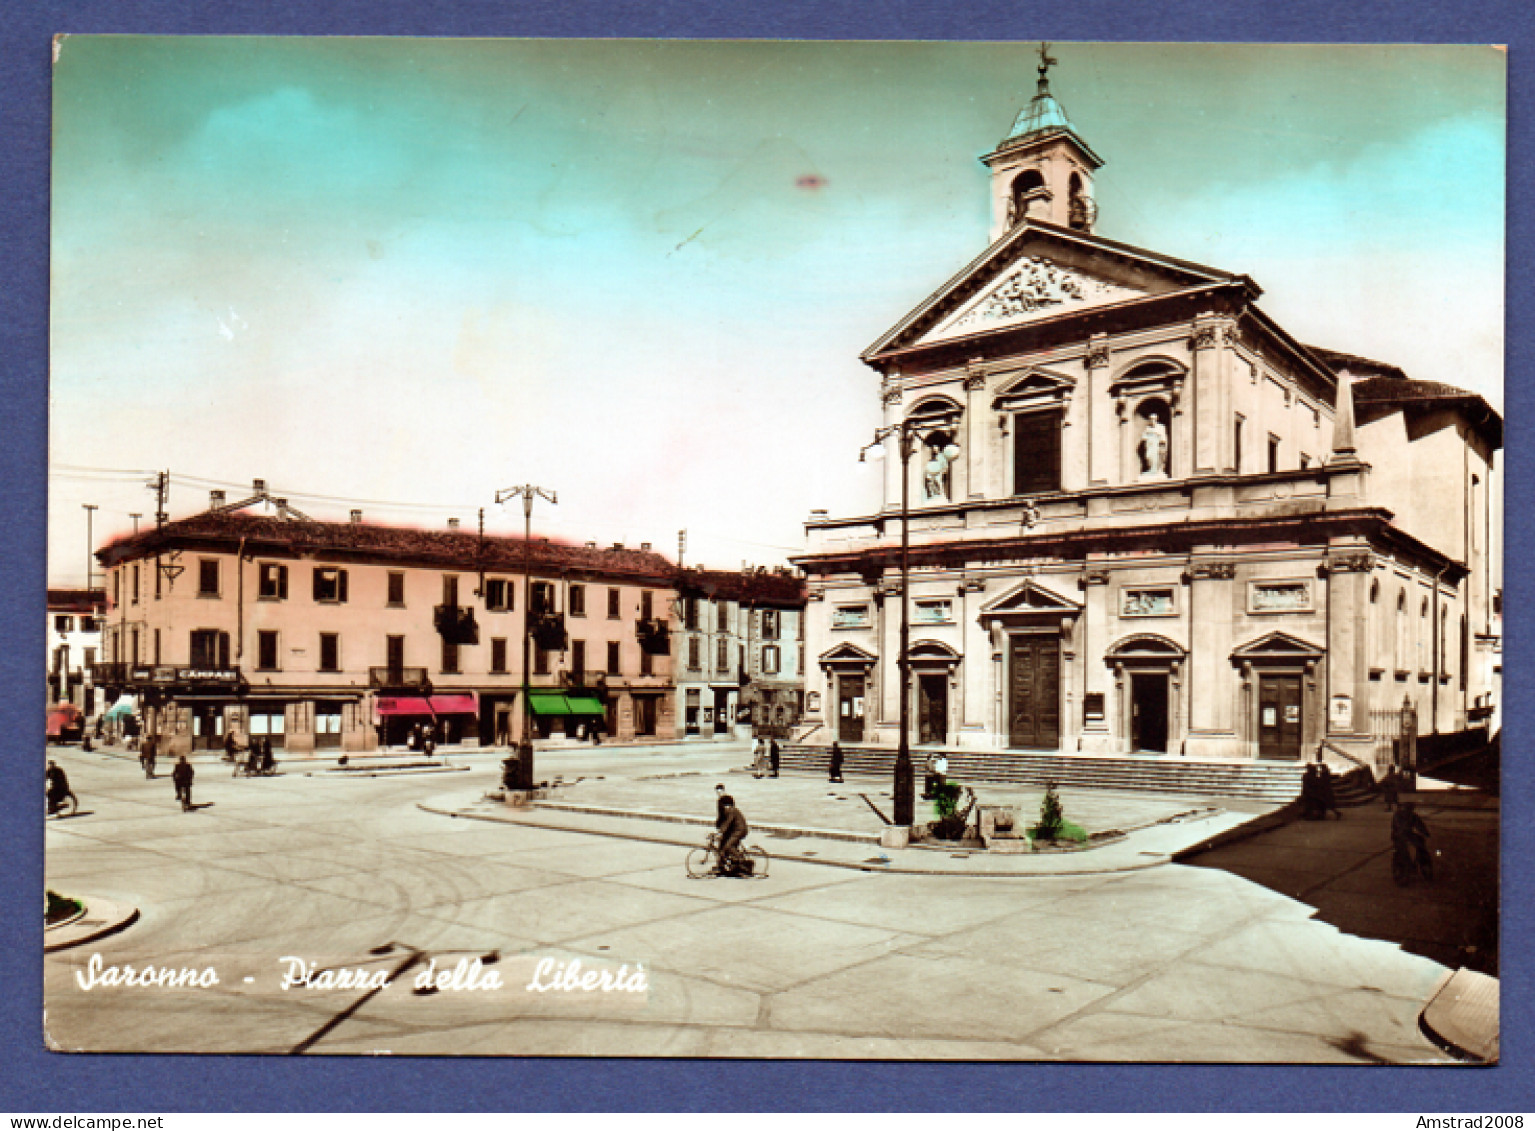 1959 - SARONNO - PIAZZA DELLA LIBERTA  -  ITALIE - Varese